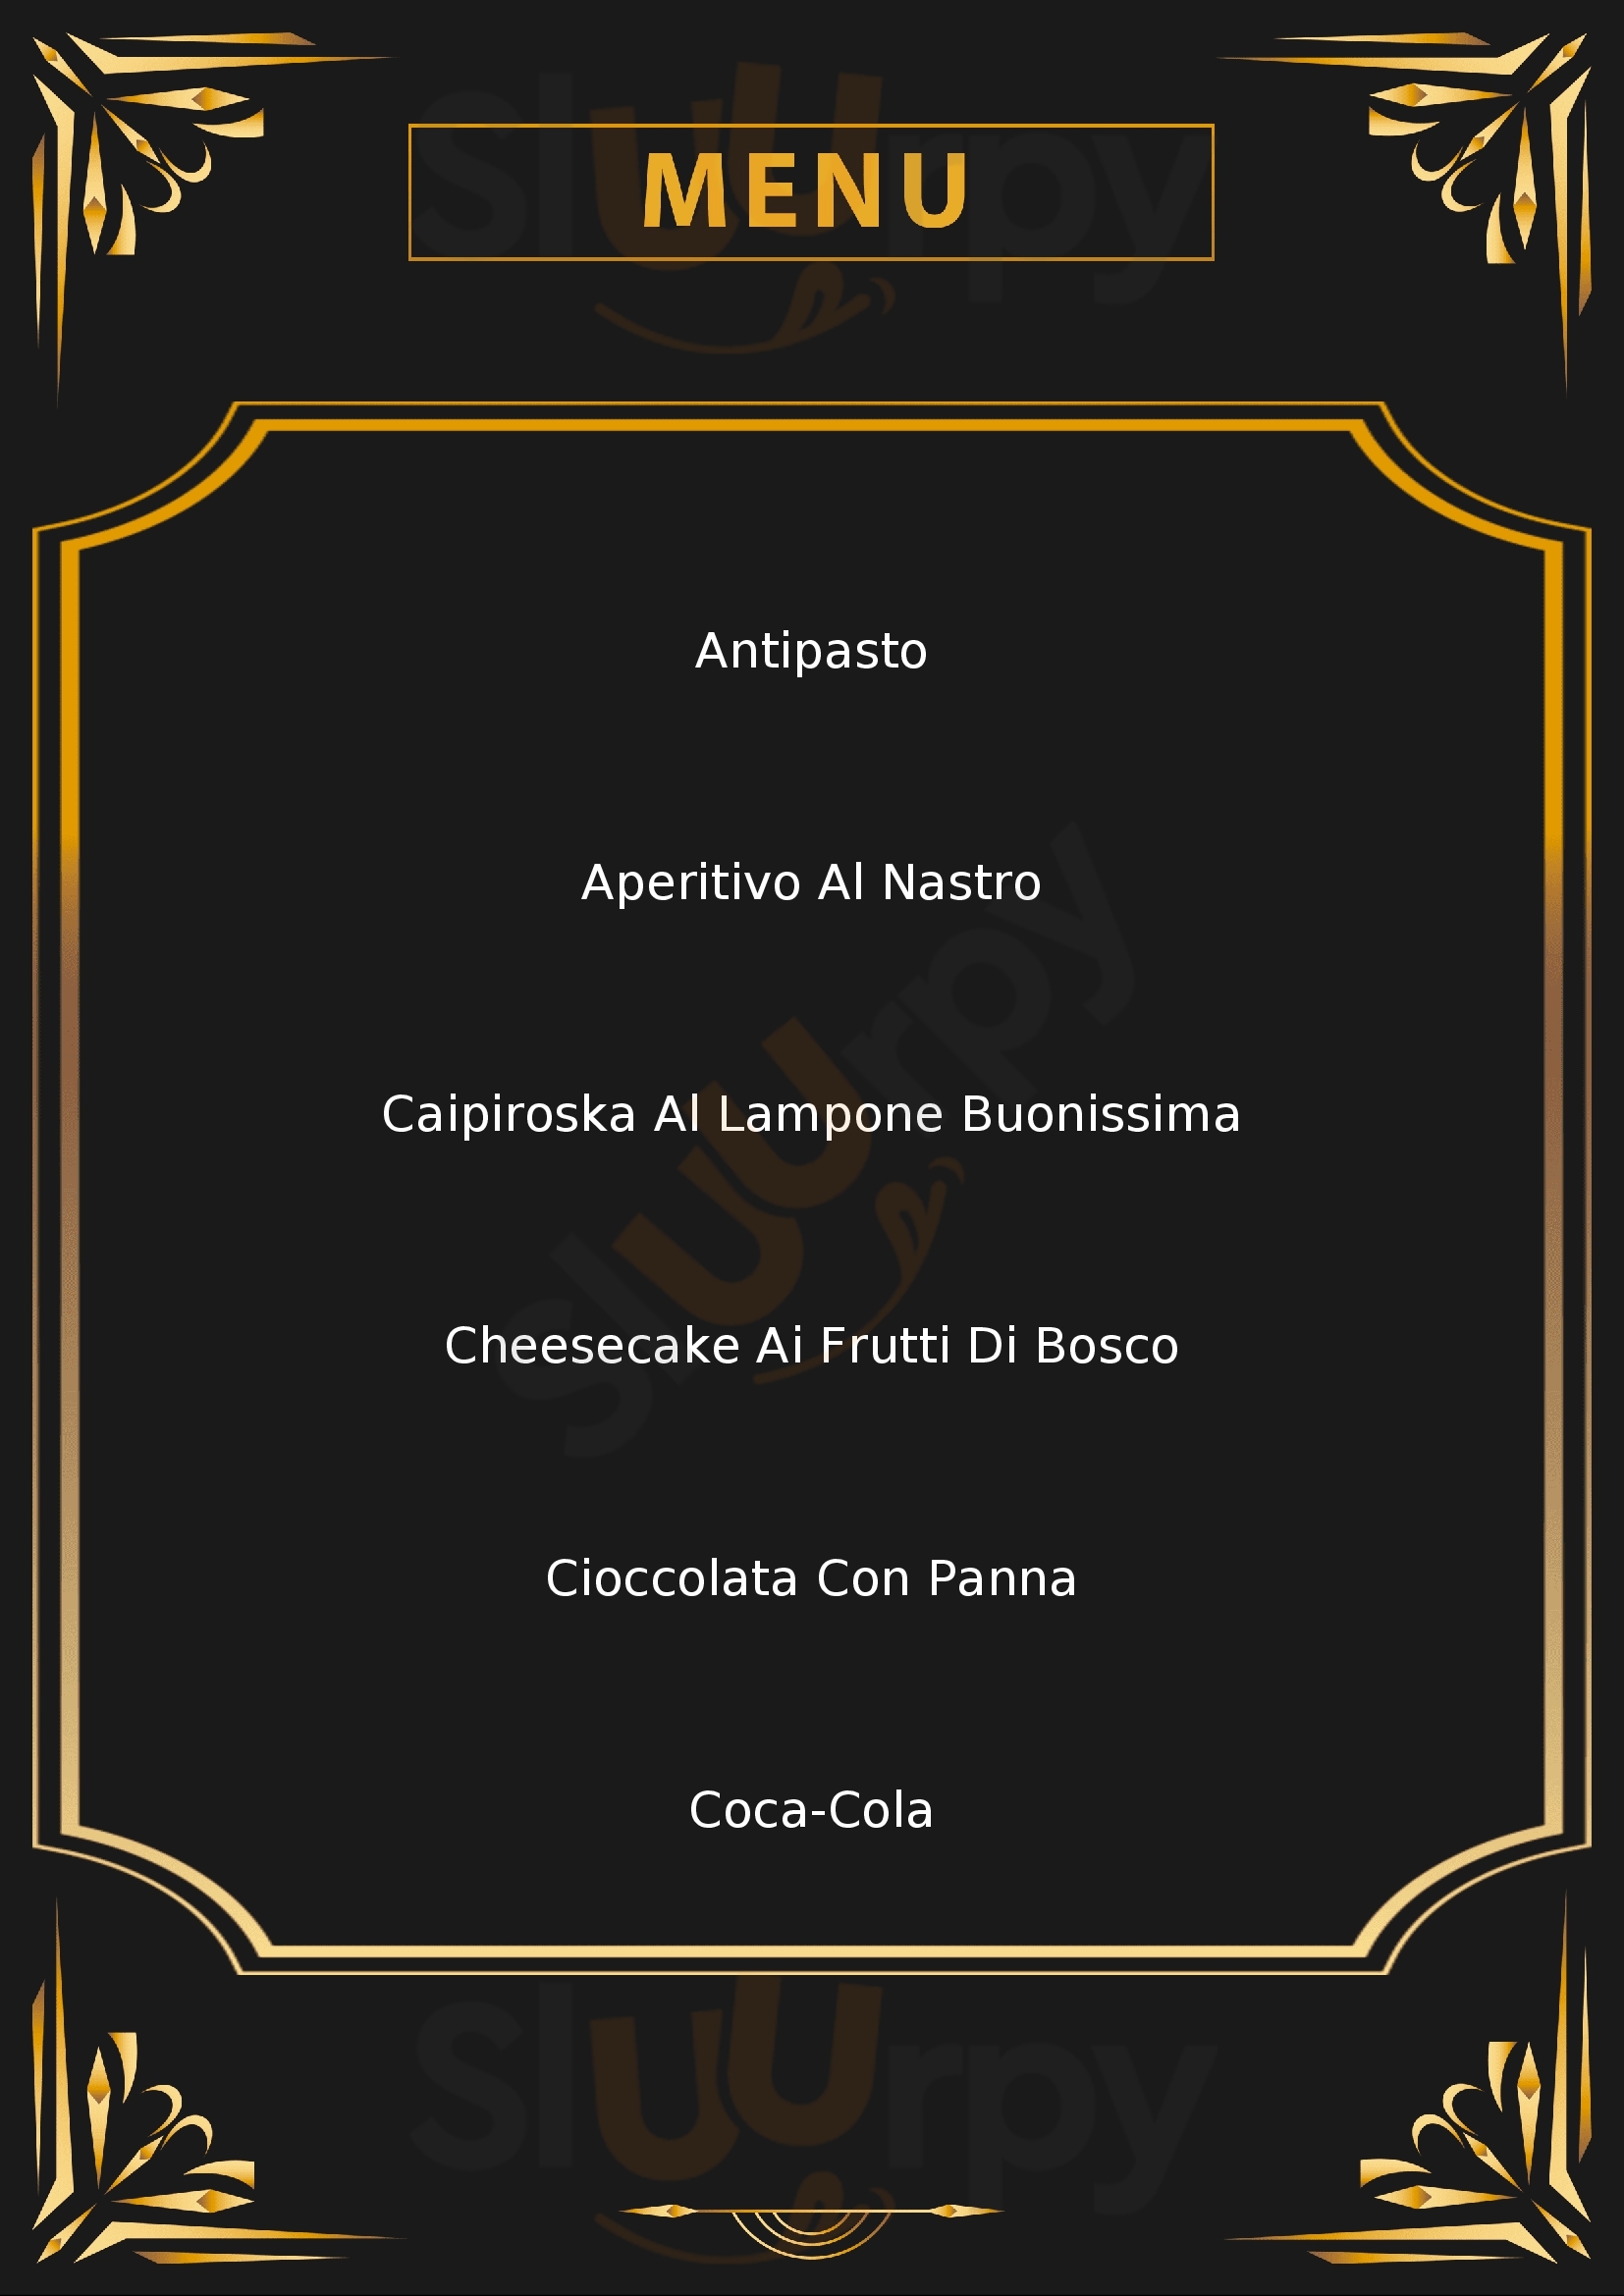 Aromi Restaurant Cafe Lecco menù 1 pagina